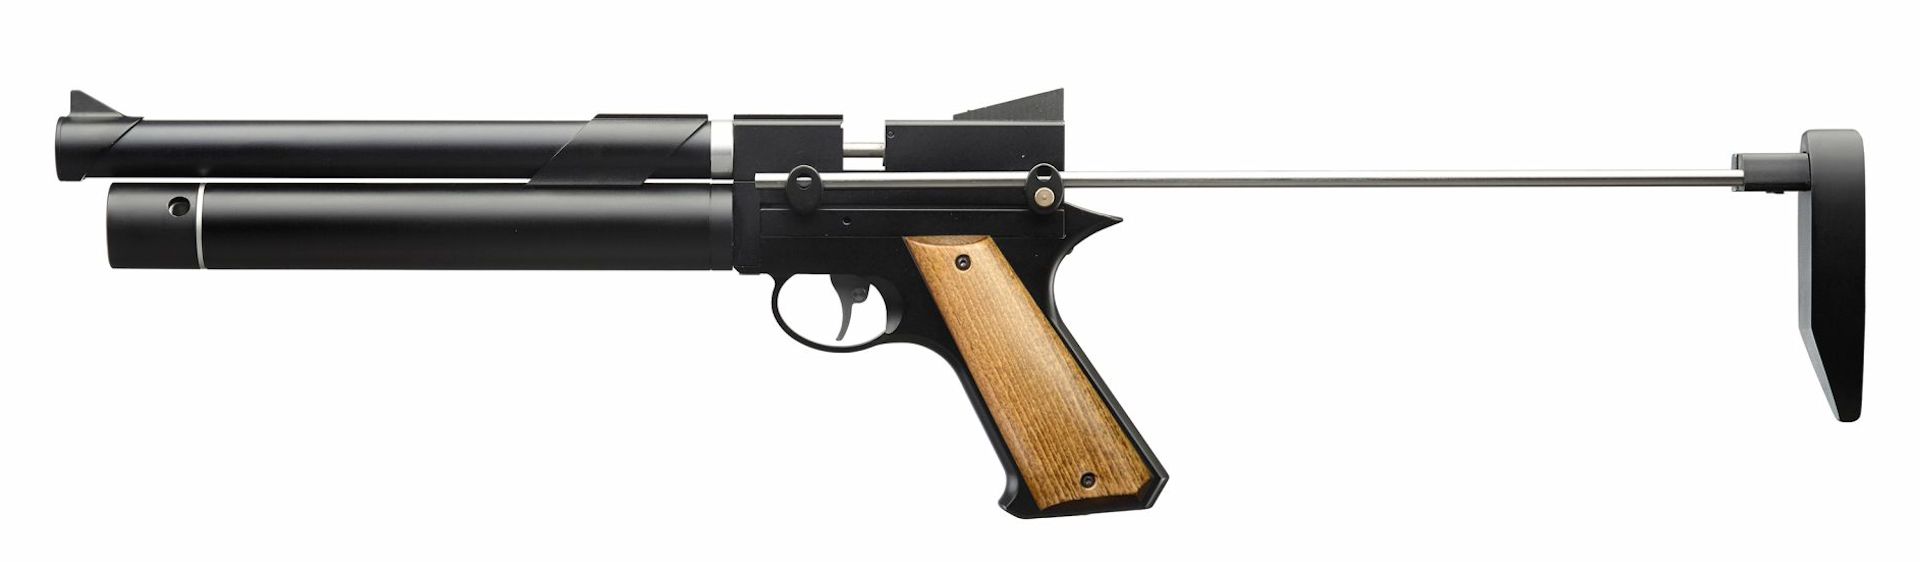 Pressluftpistole airmaX PP750-LP mit ausgezogener Schulterstütze